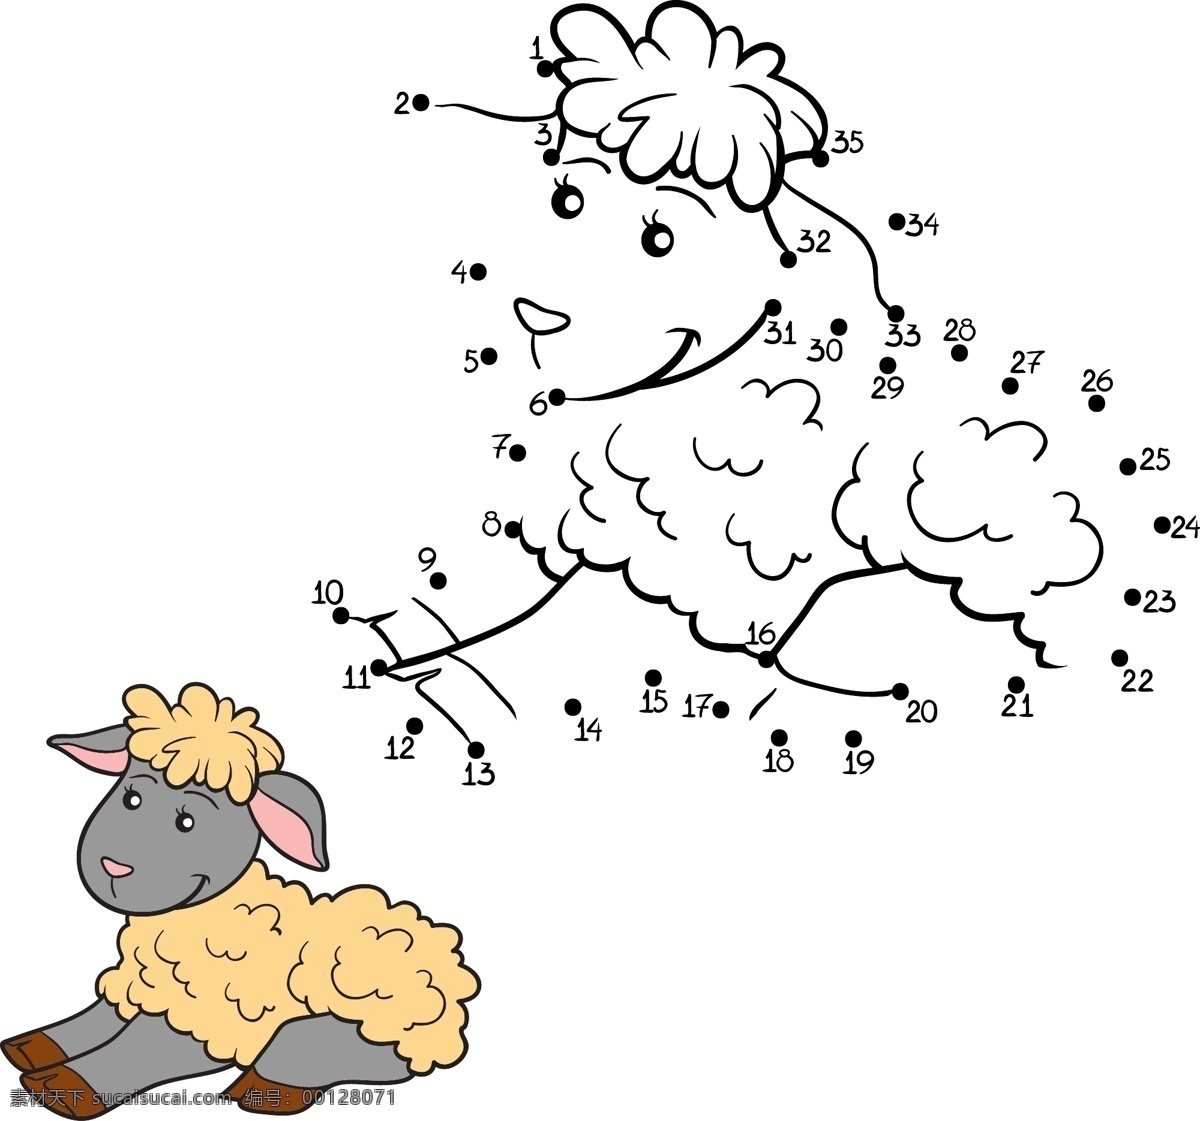 卡通 羊 数字 游戏 卡通羊 卡通动物漫画 动物插画 数字游戏 儿童绘画 儿童美术素材 生活百科 矢量素材